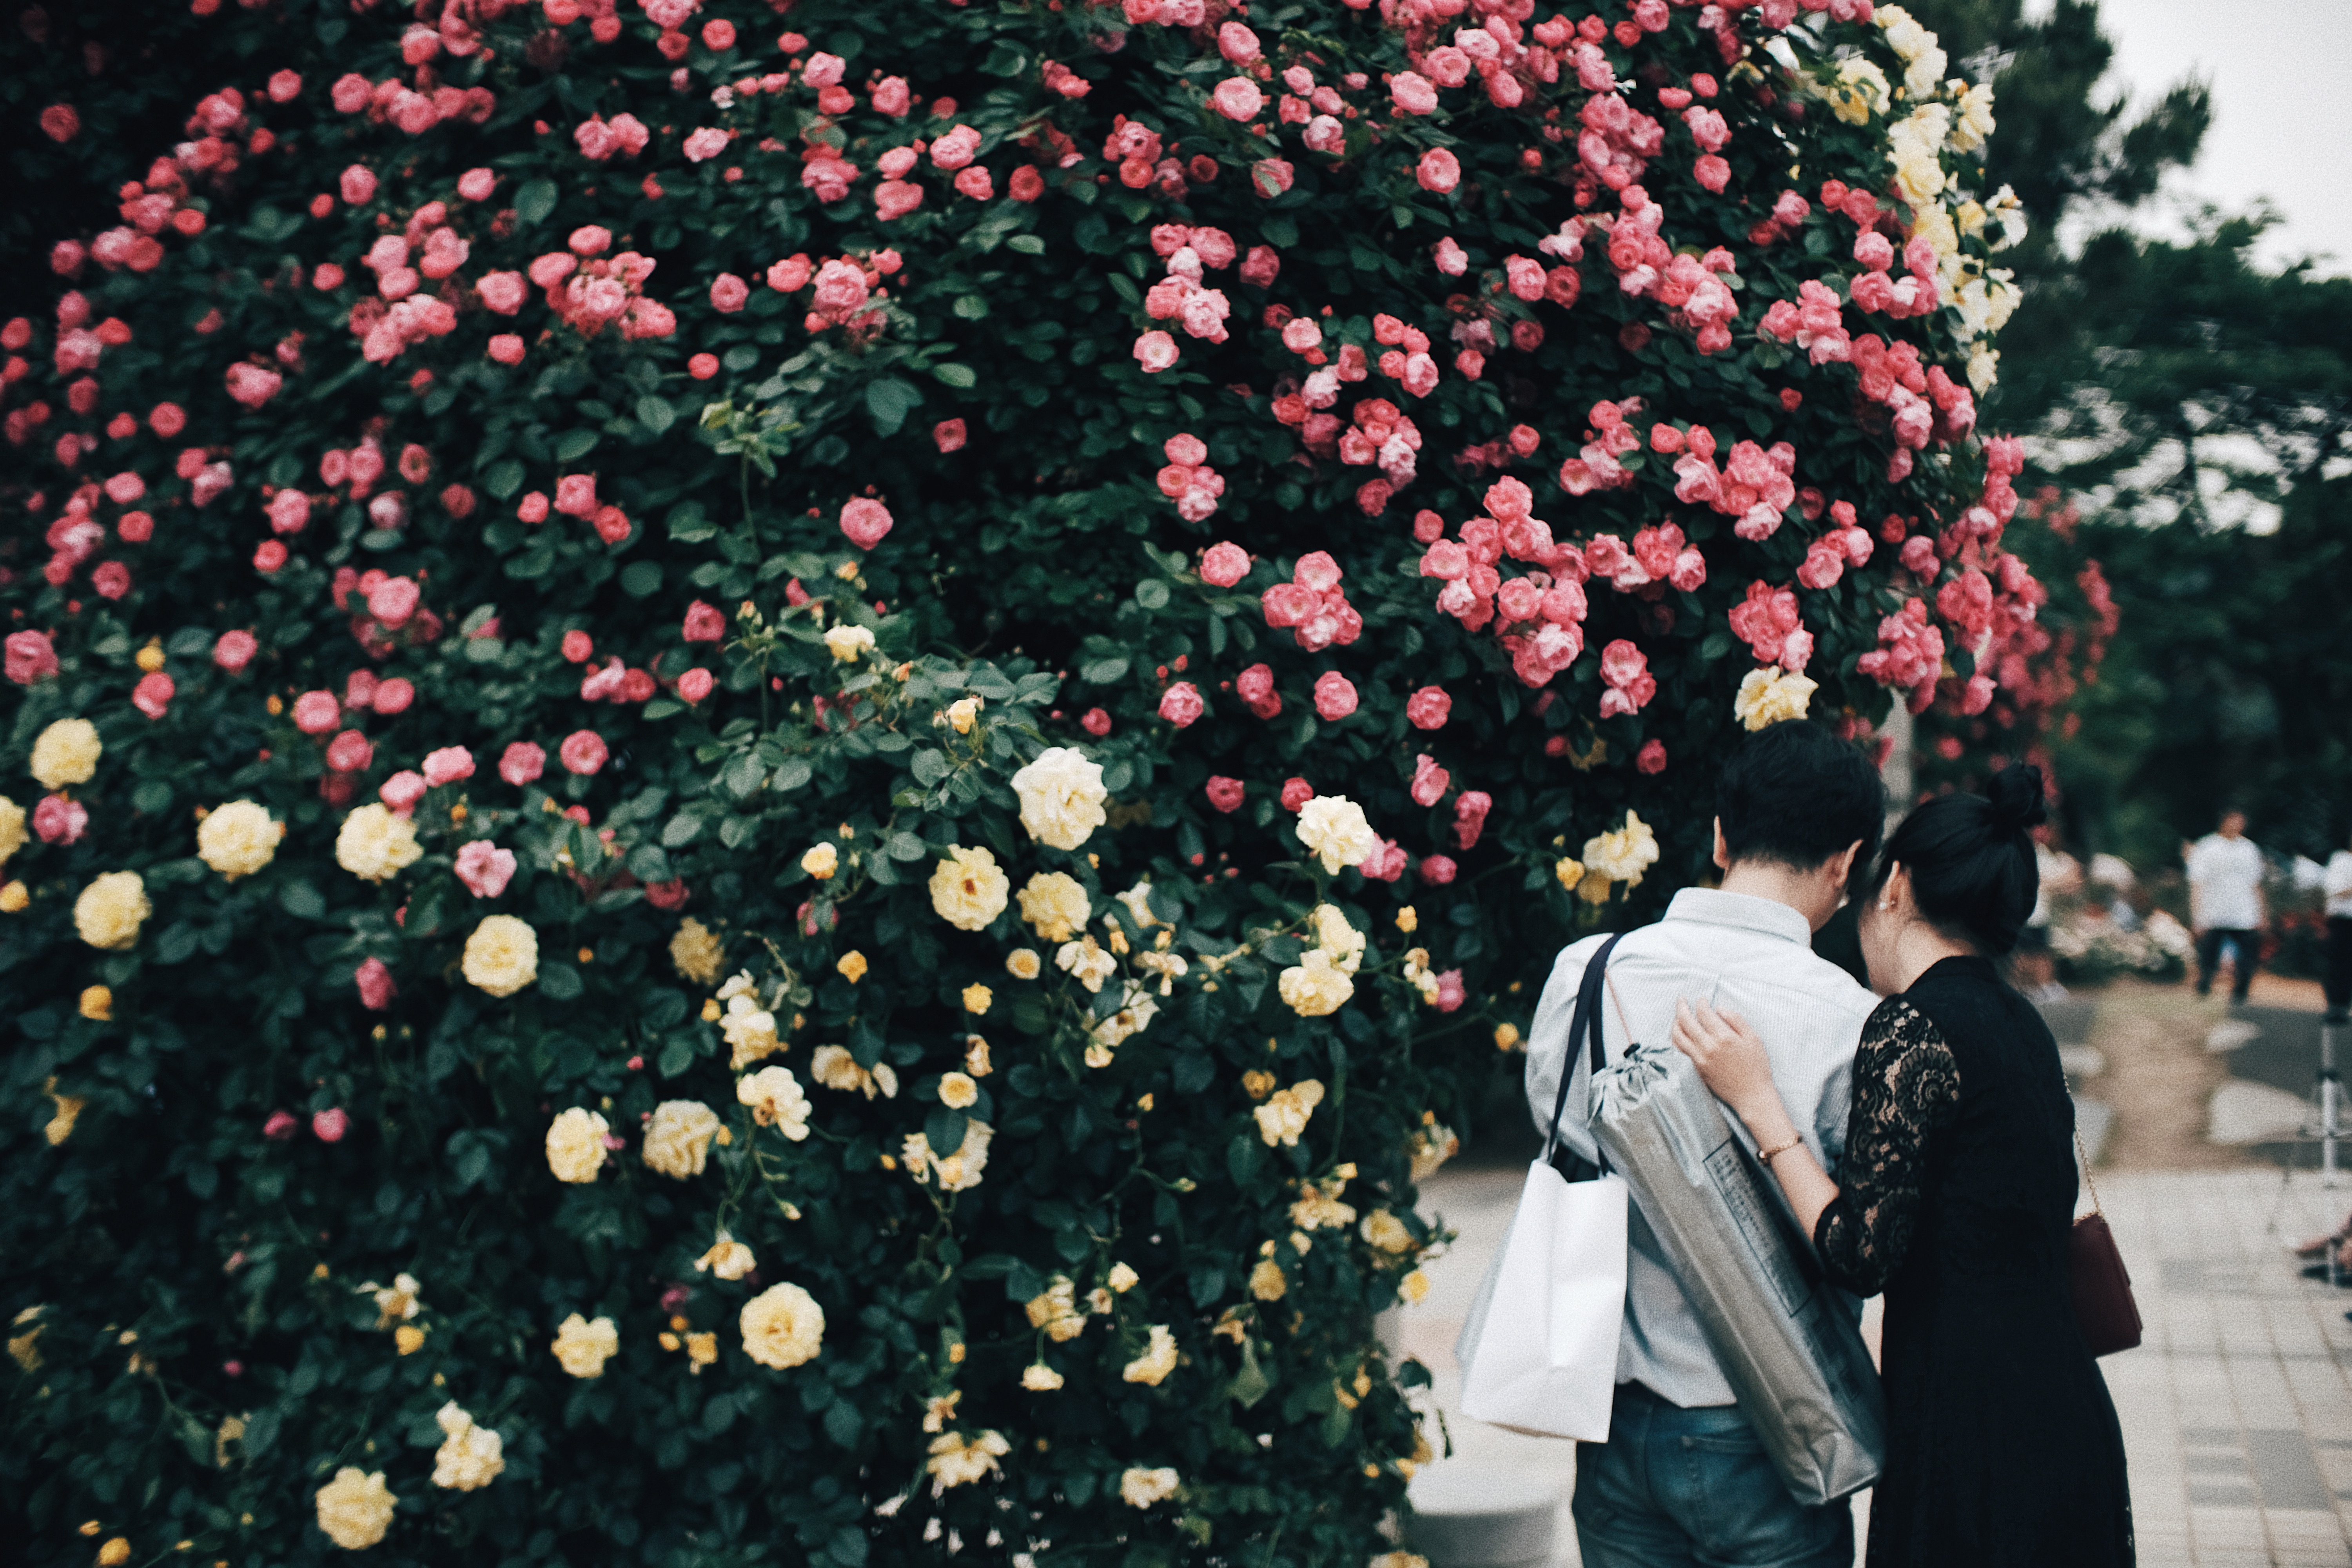 Photographer | Seoul Grand Park Rose Festival 2018 South Korea